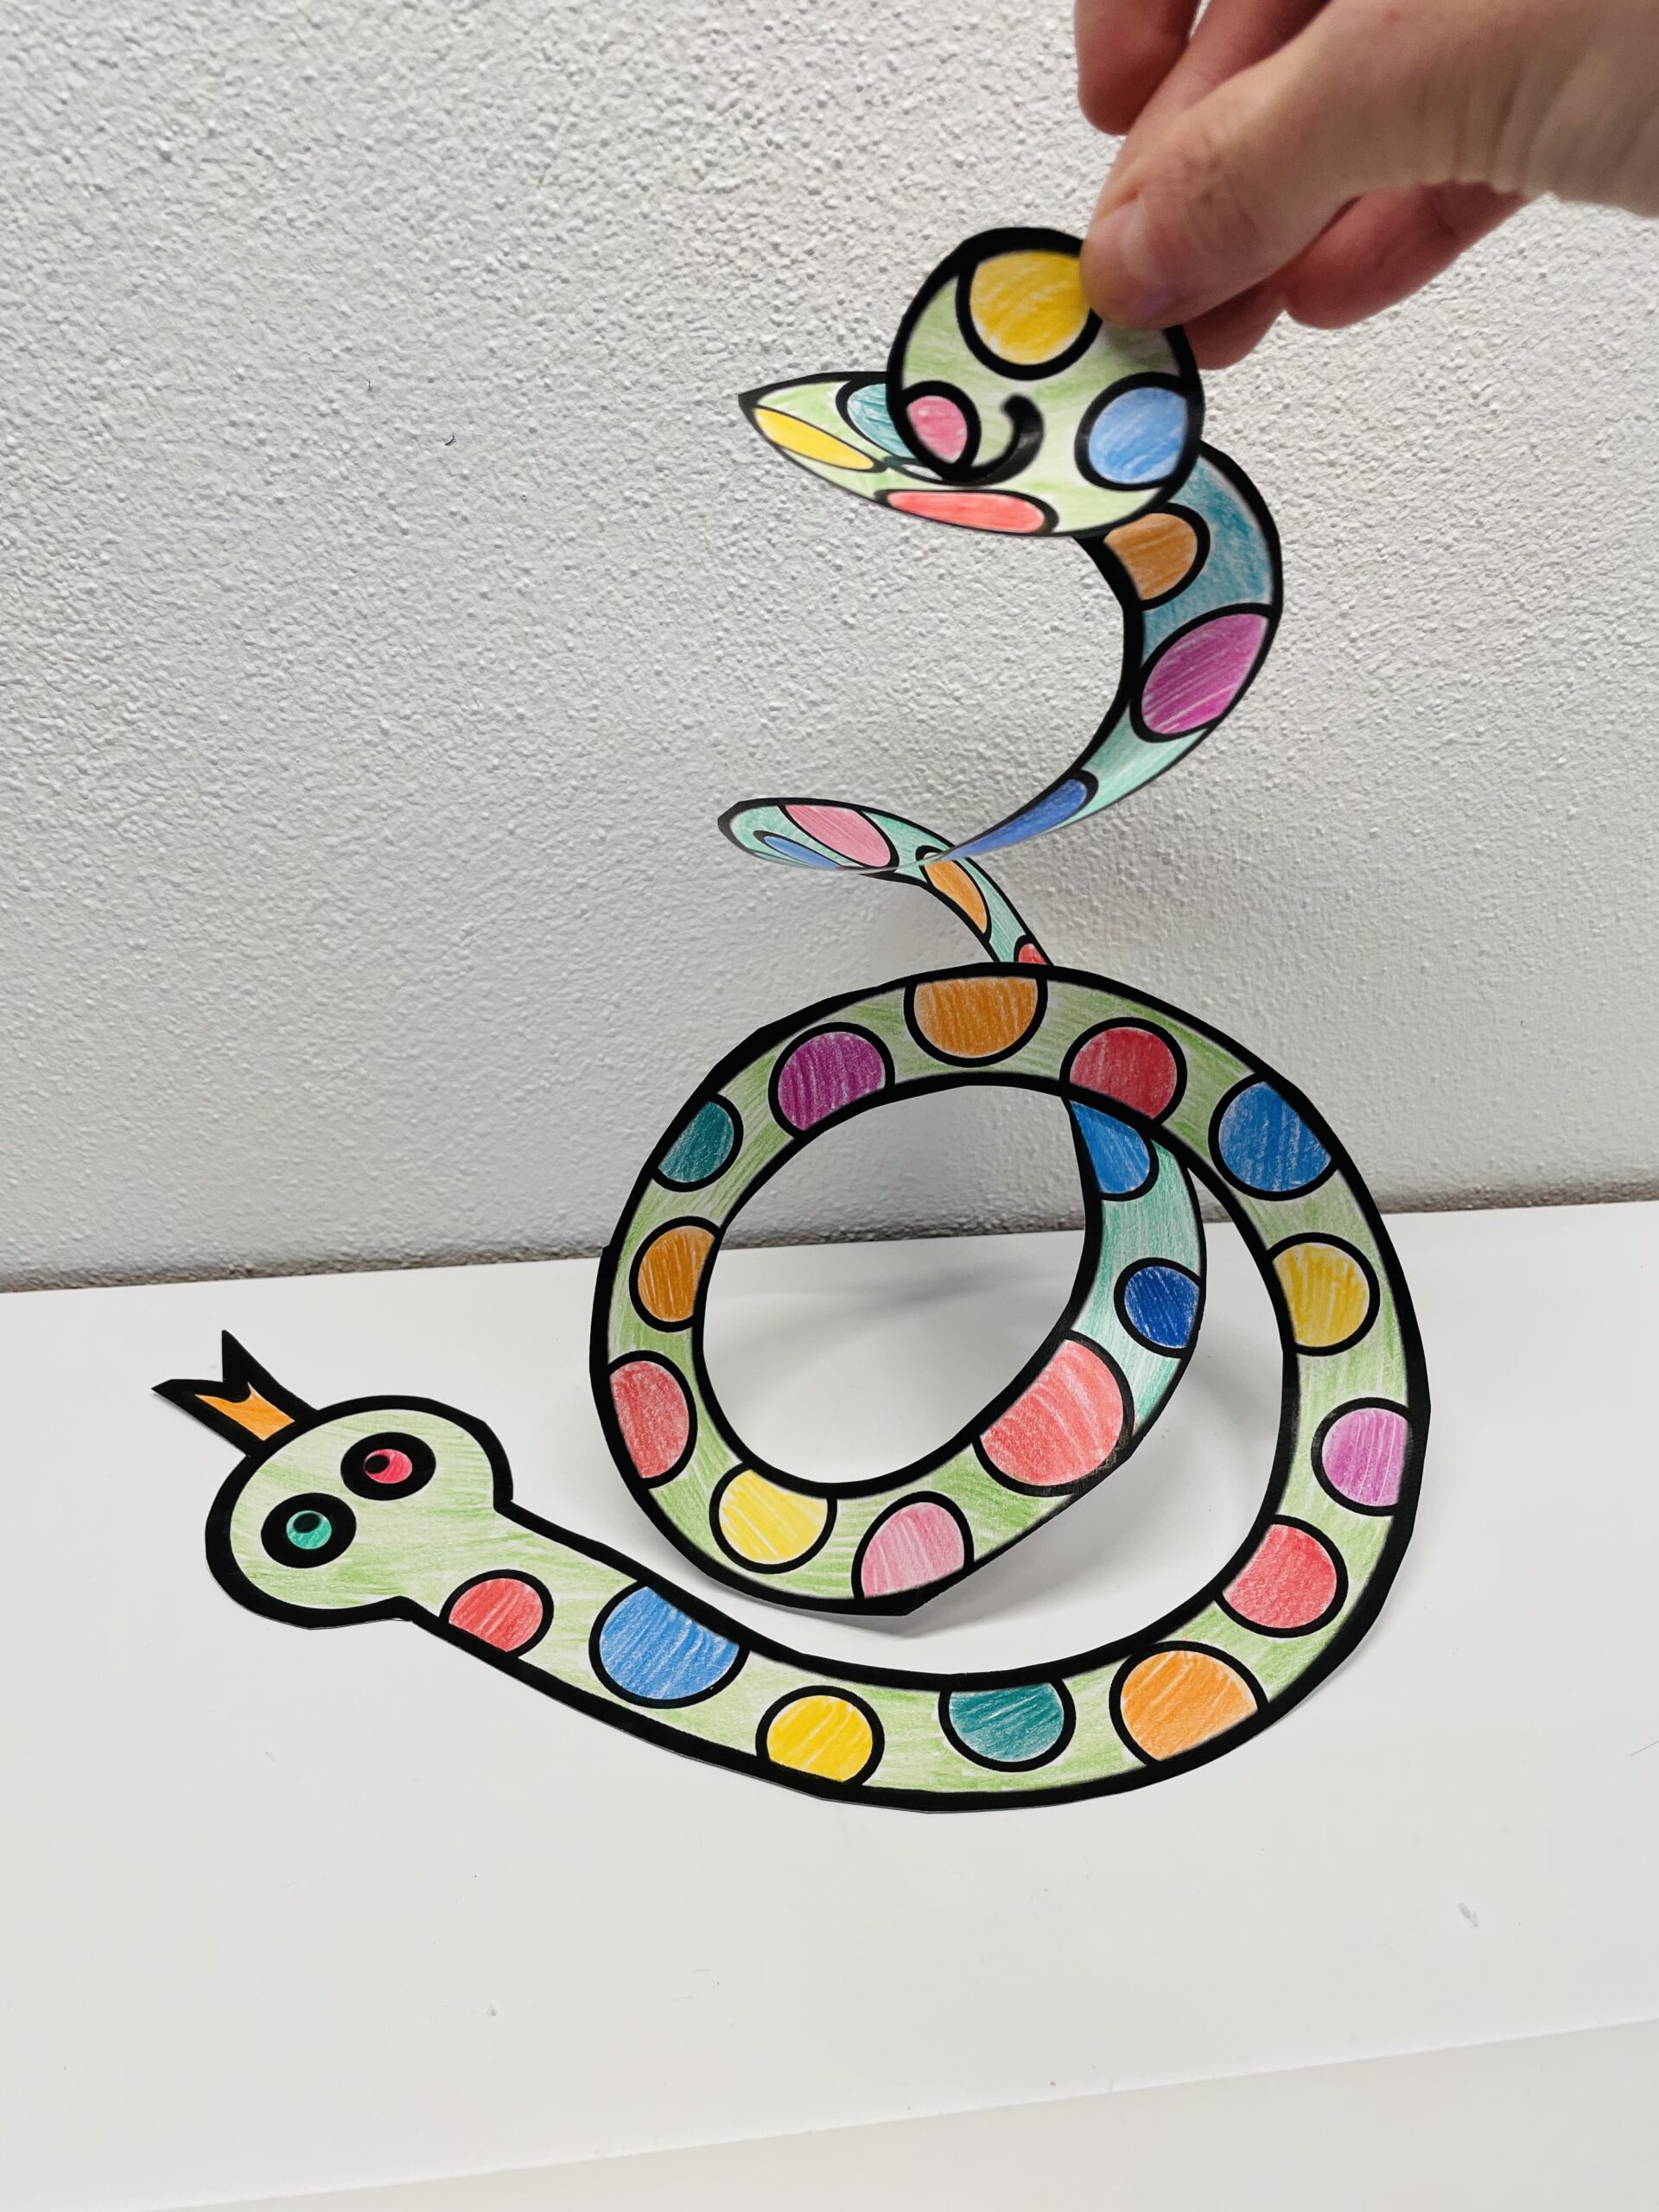 Bild zum Schritt 8 für das Bastel- und DIY-Abenteuer für Kinder: 'Hebt die Schlange vorsichtig hoch und fertig ist eure Girlande.'